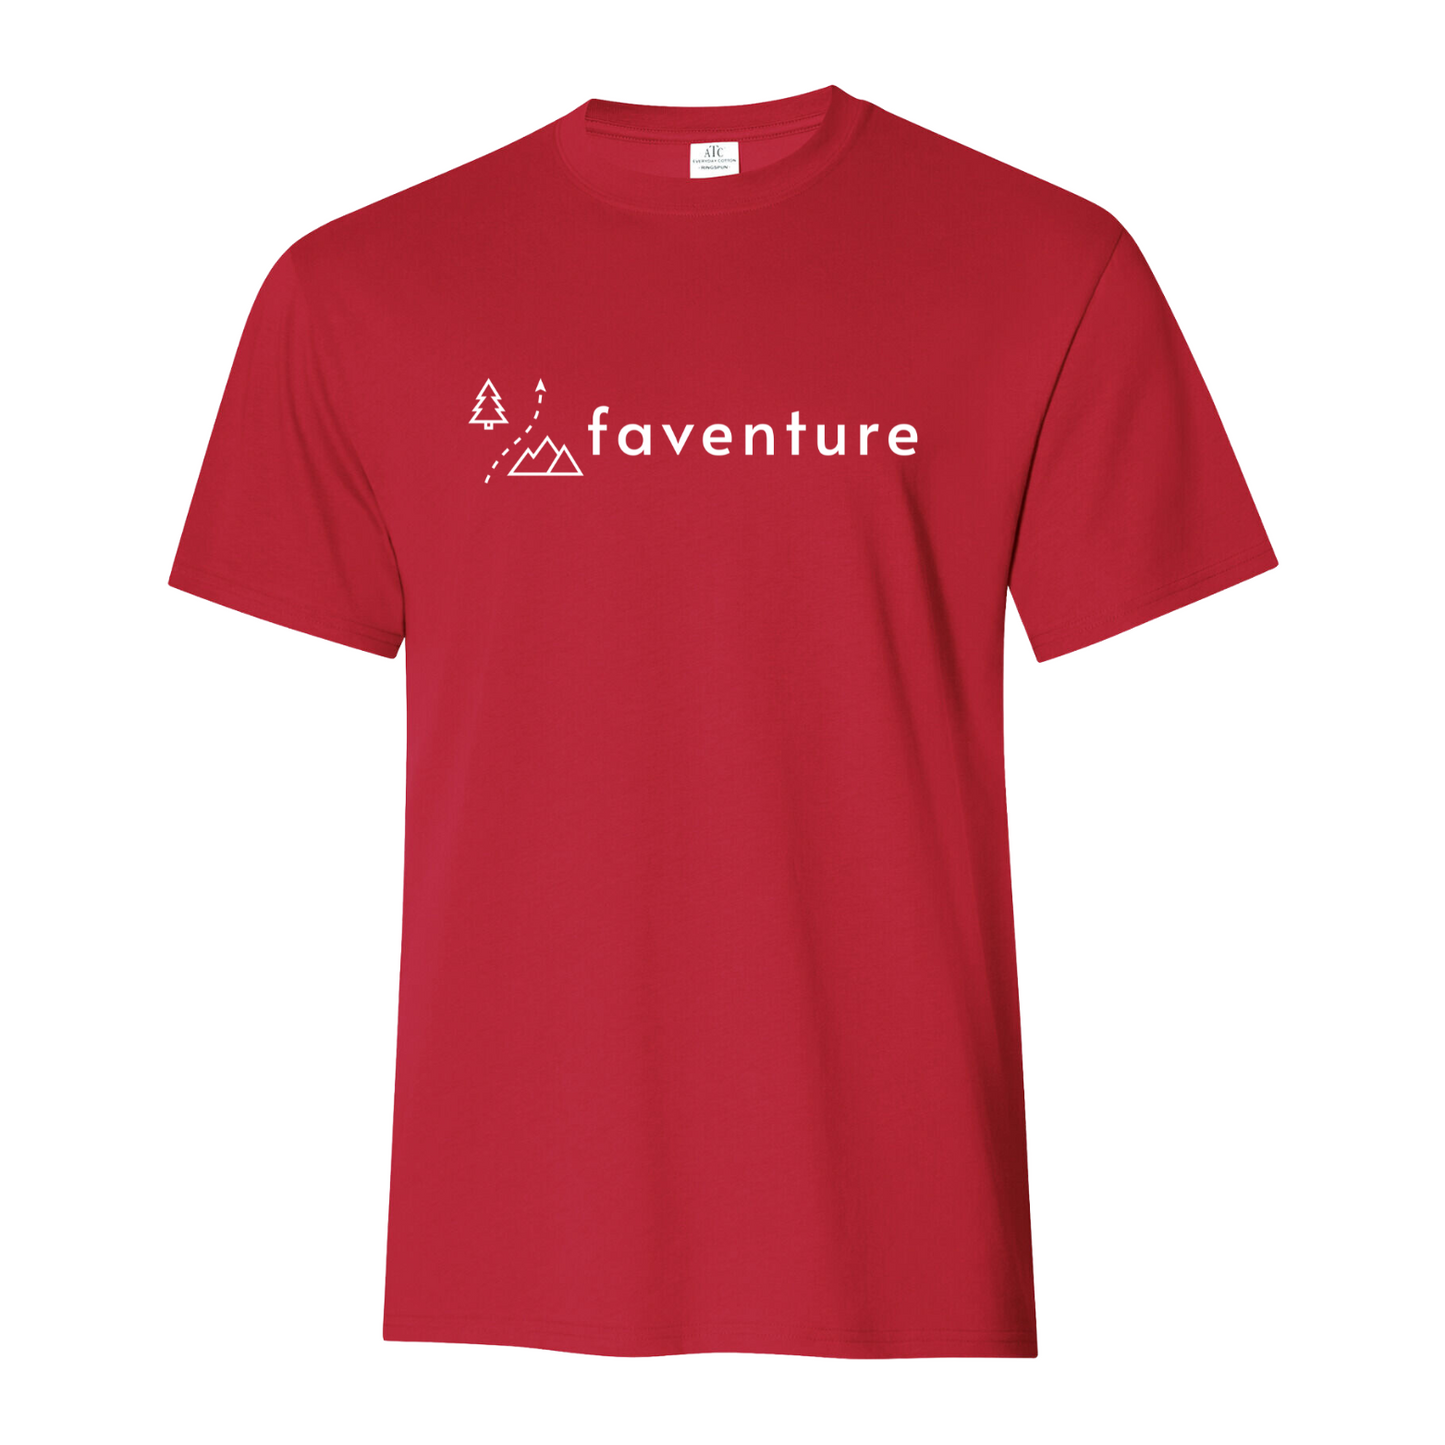 (Faventure) T-shirt